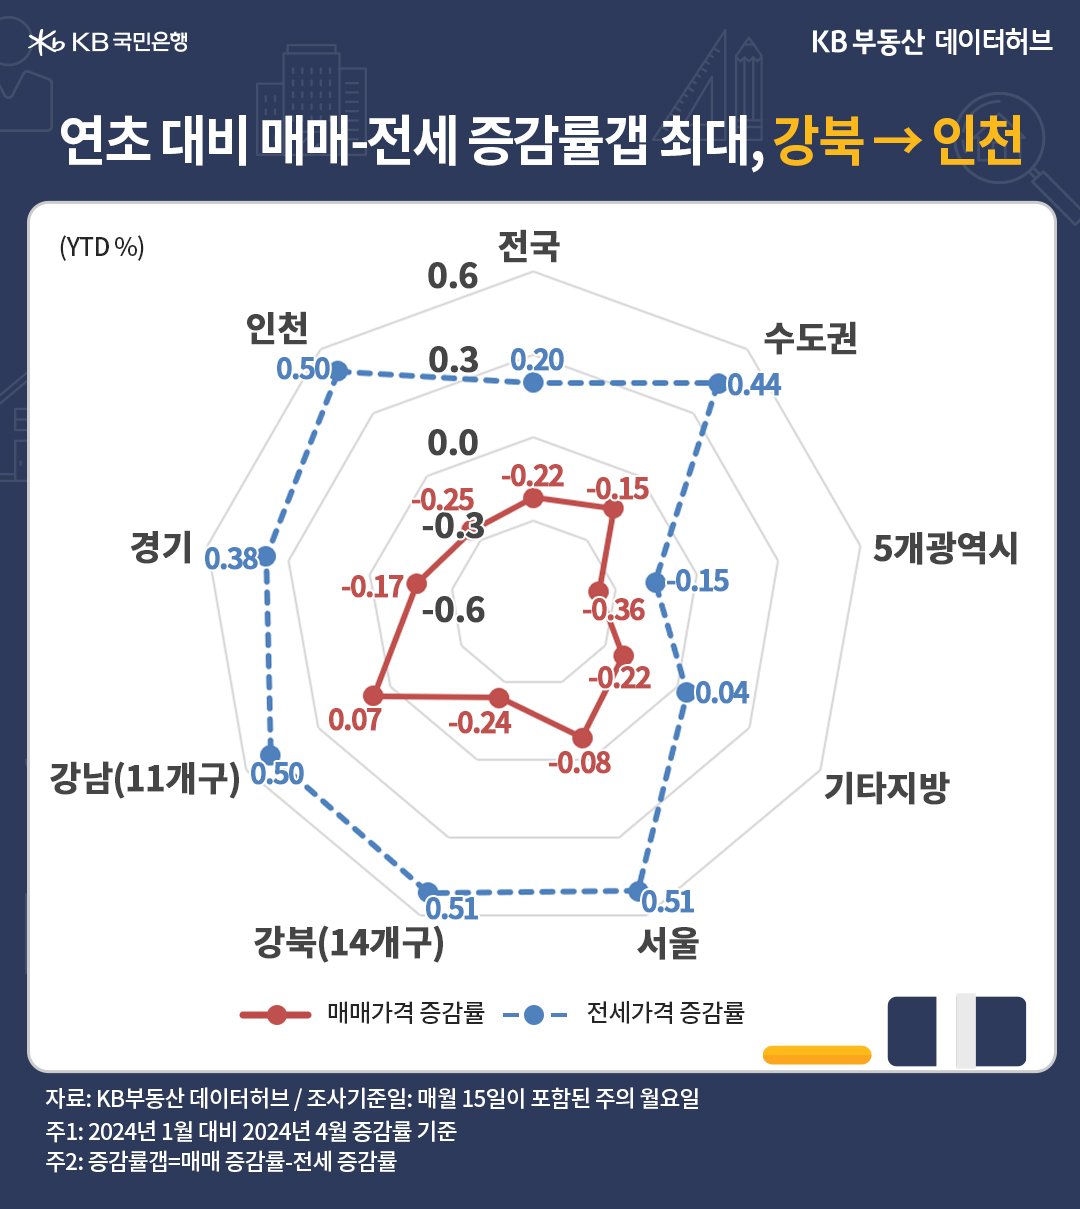 '강북권'의 매매-전세 간 증감률갭이 컸지만, 1위를 '인천'에 내주면서 2위를 기록했습니다. 두 지역 모두가 투자가치보다 사용가치가 반영되면서 전세가격이 강한 지역이라는 등의 내용을 담고있는 그래프이다.